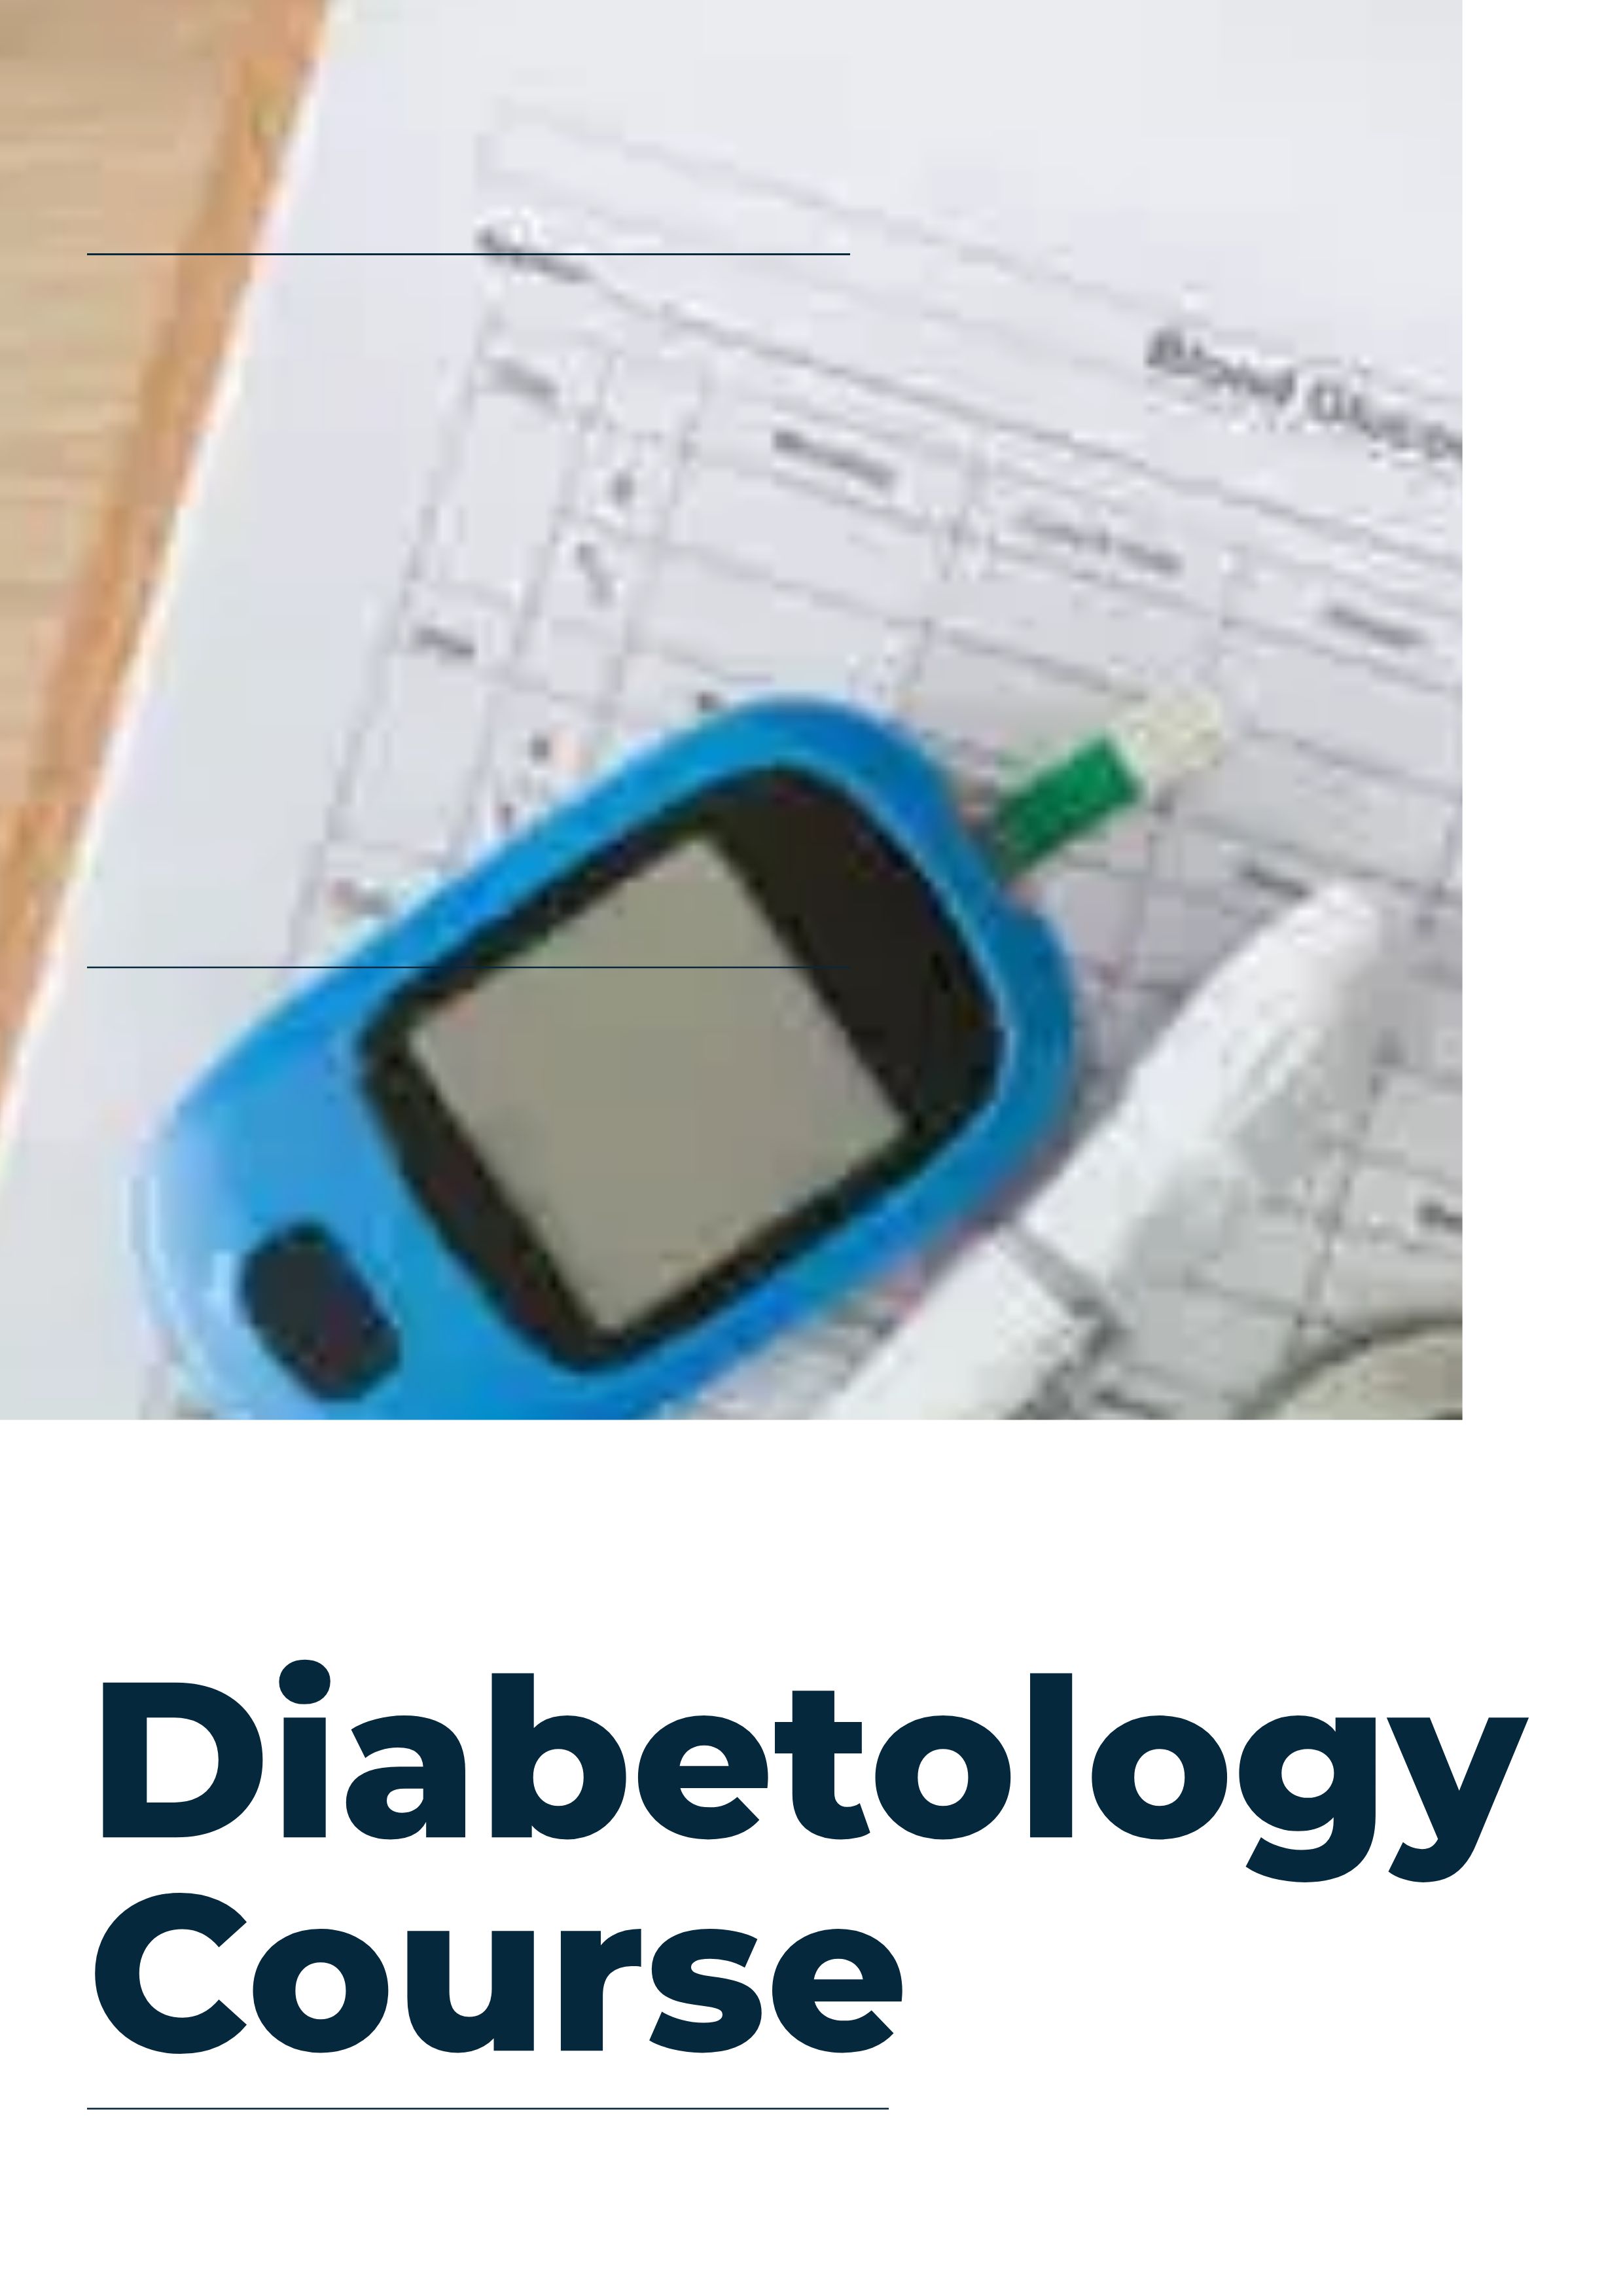 Diabetology Course